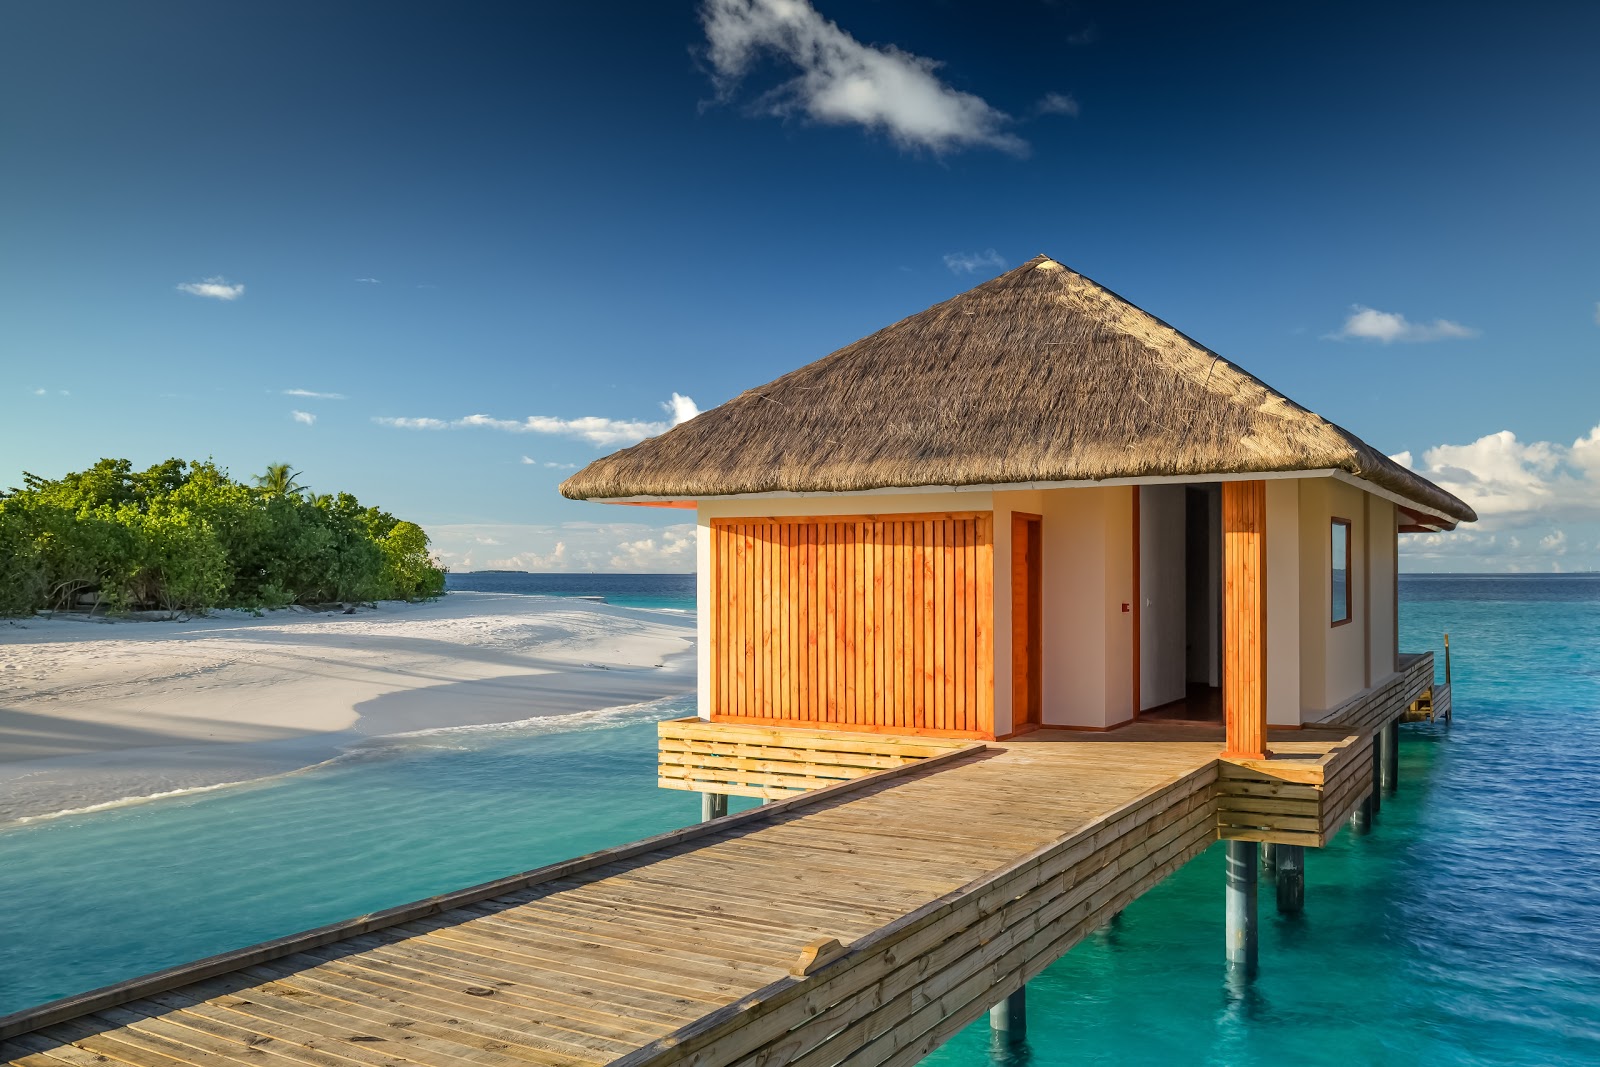 Photo de Kudafushi Resort island - endroit populaire parmi les connaisseurs de la détente